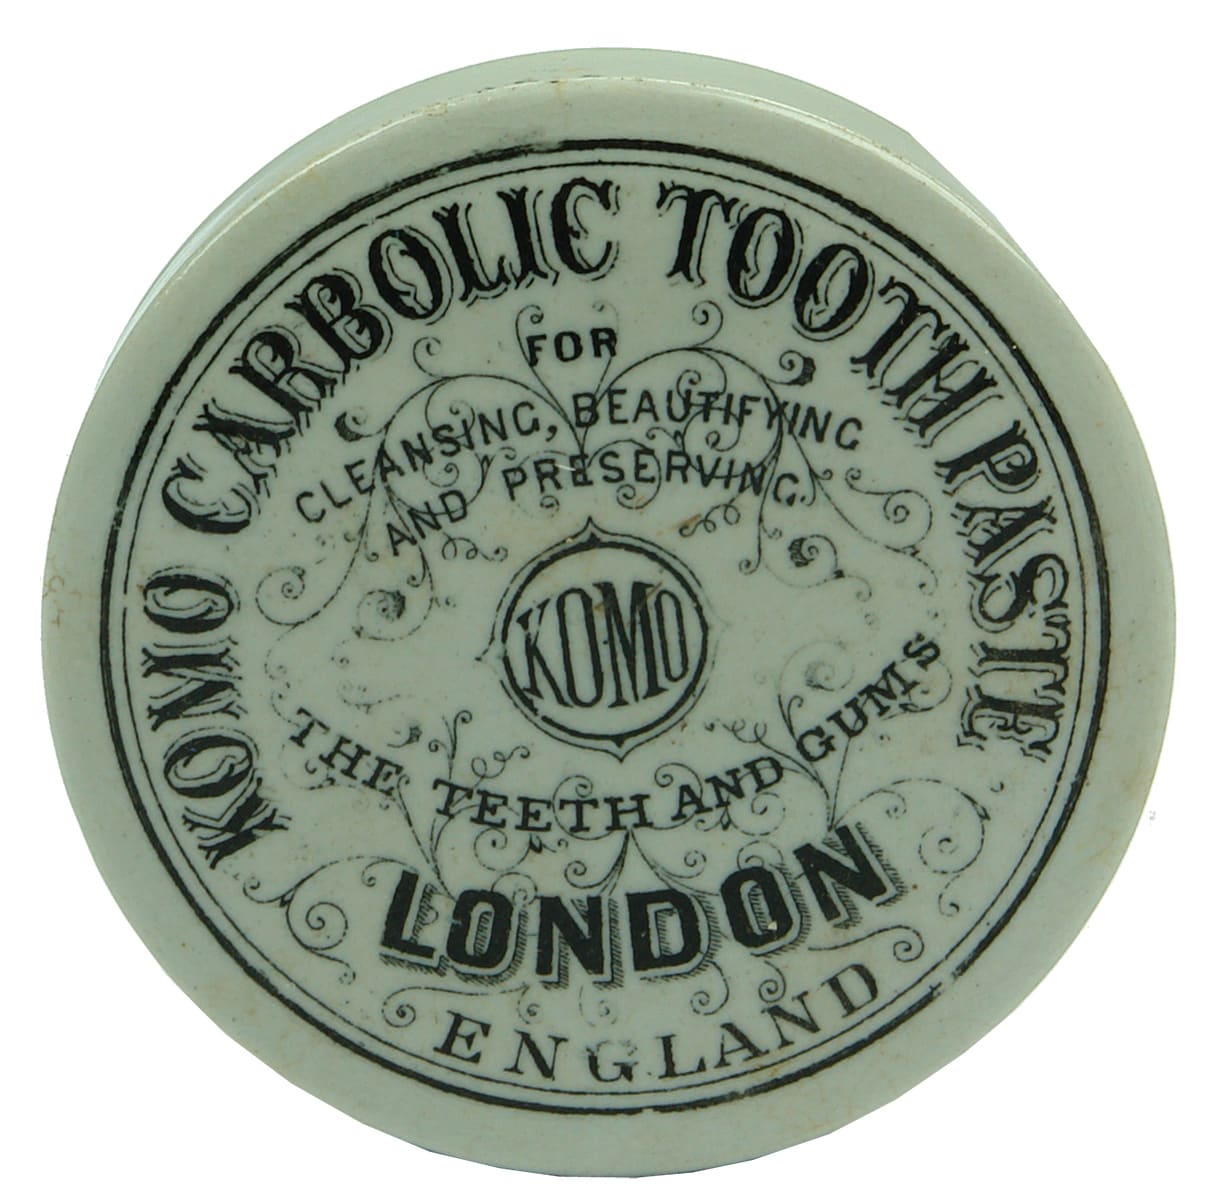 Komo Carbolic Tooth Paste Pot Lid